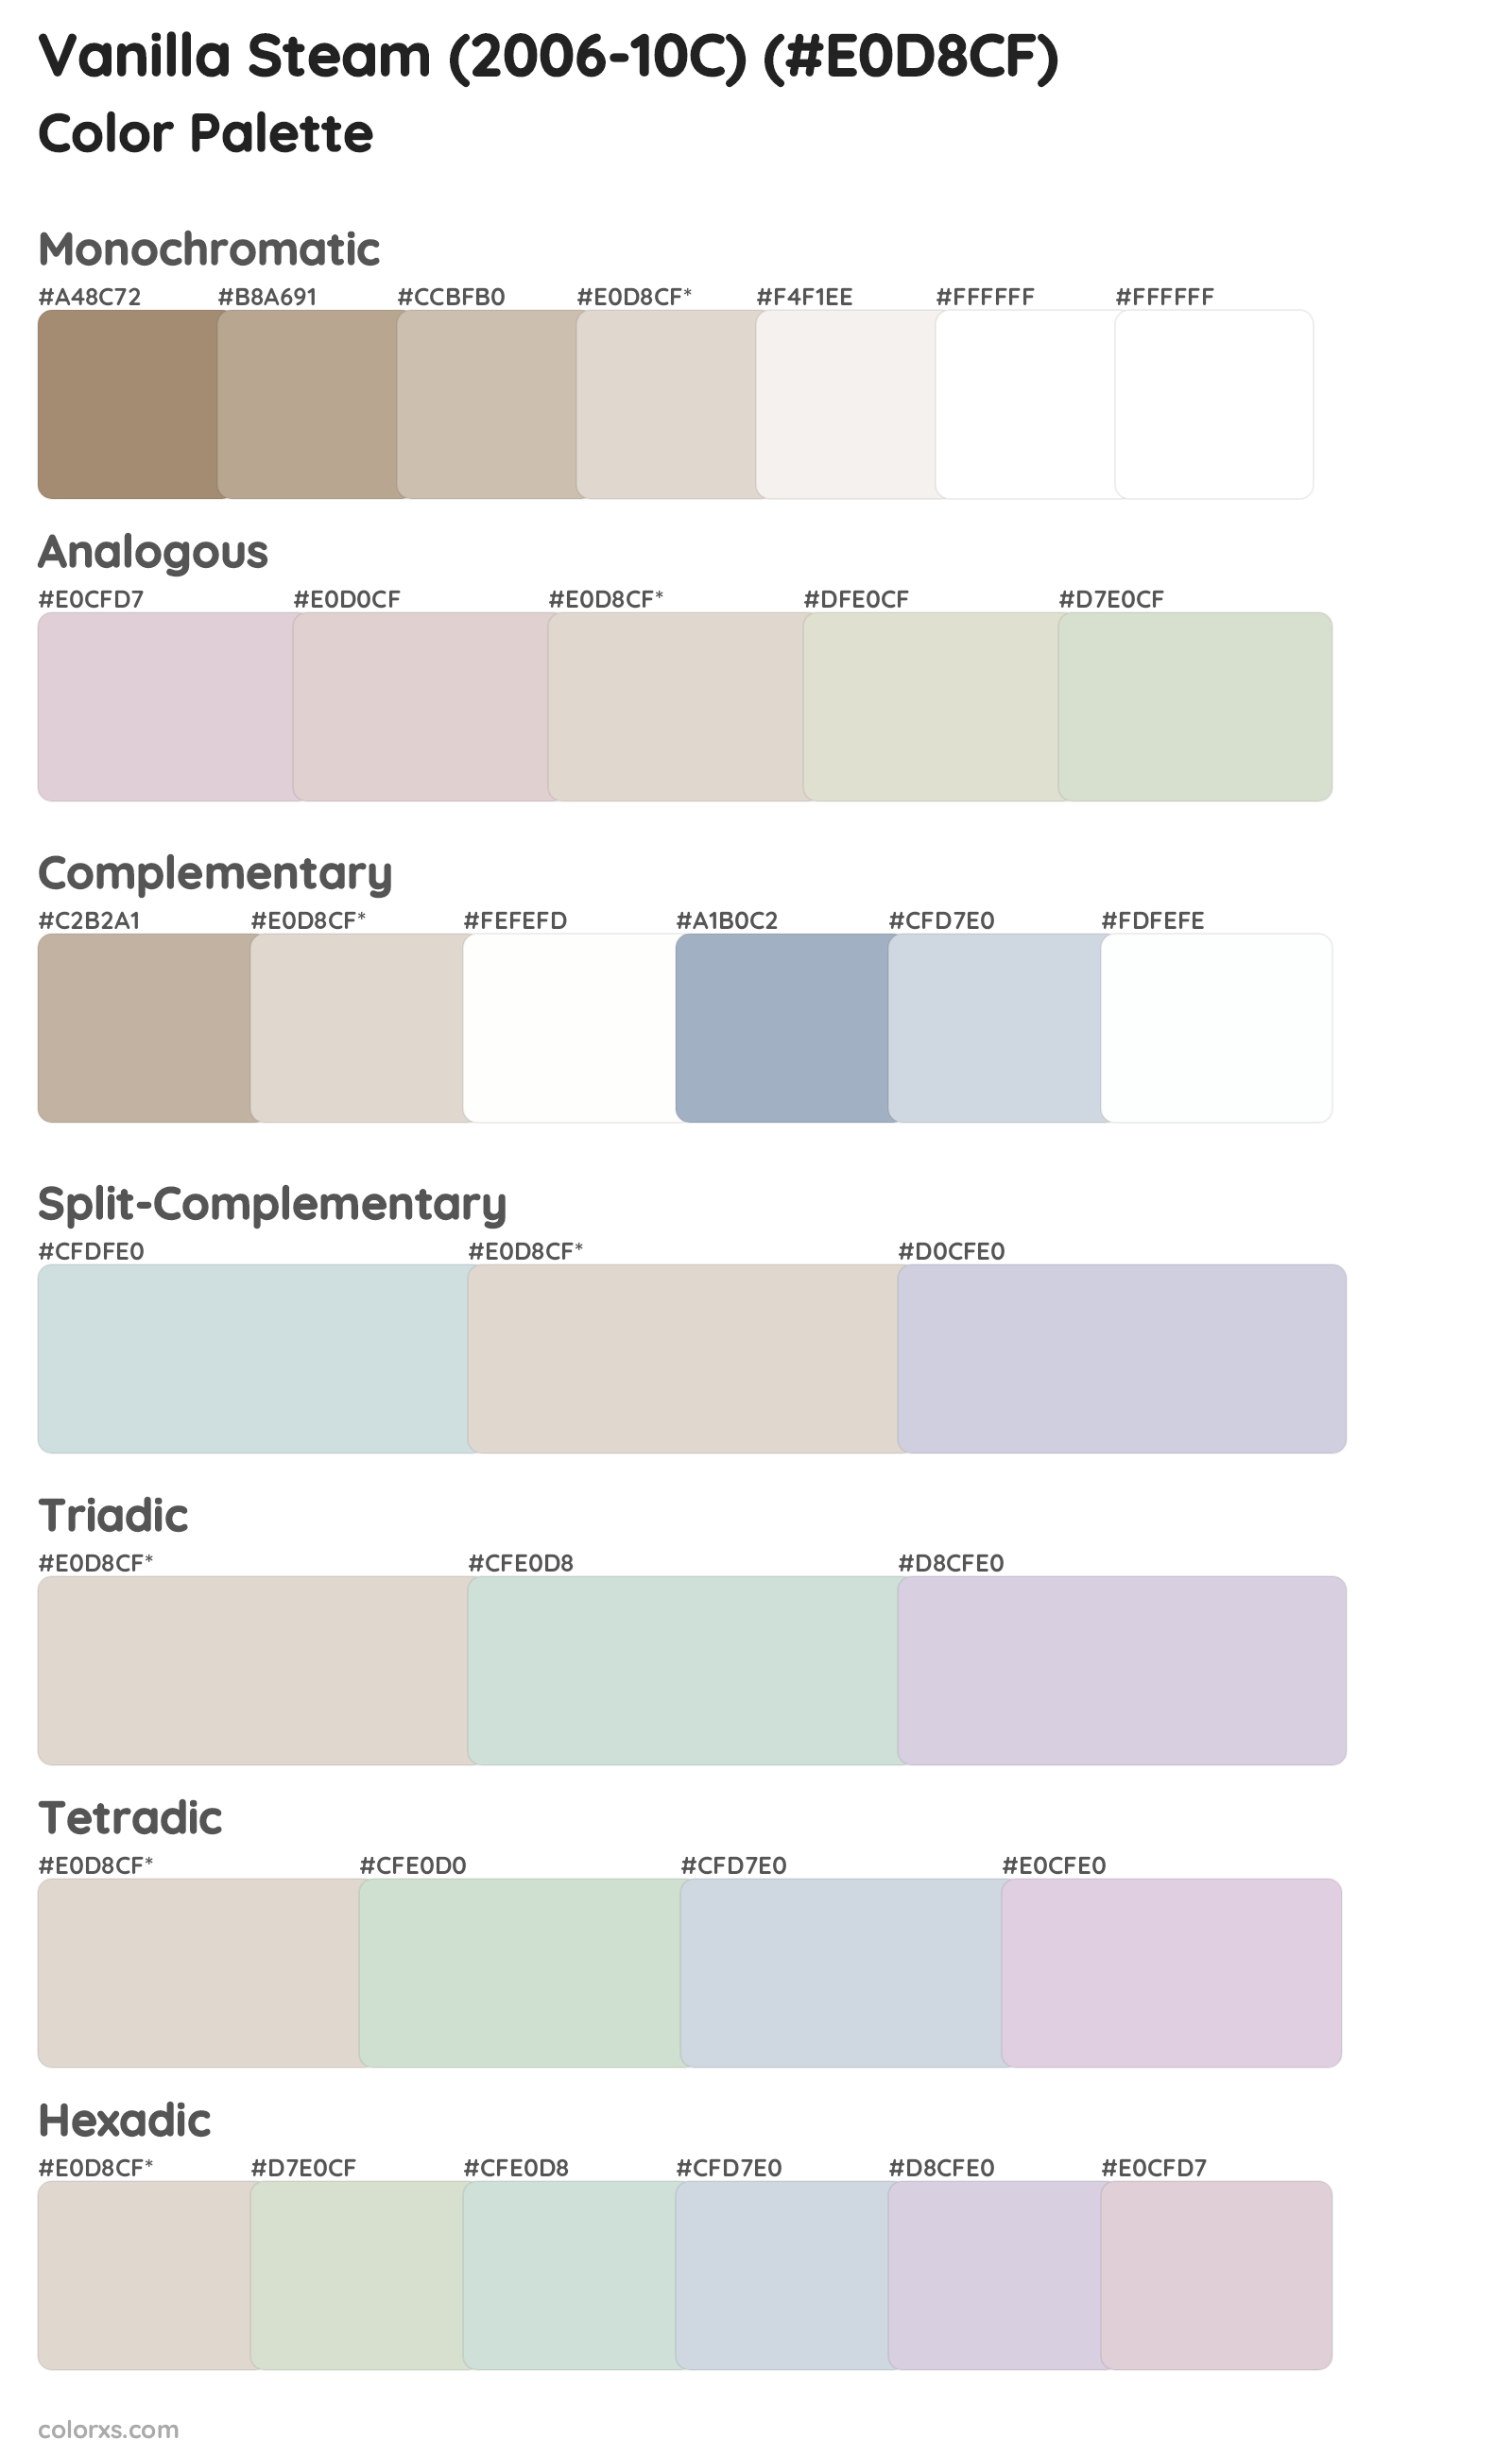 Vanilla Steam (2006-10C) Color Scheme Palettes